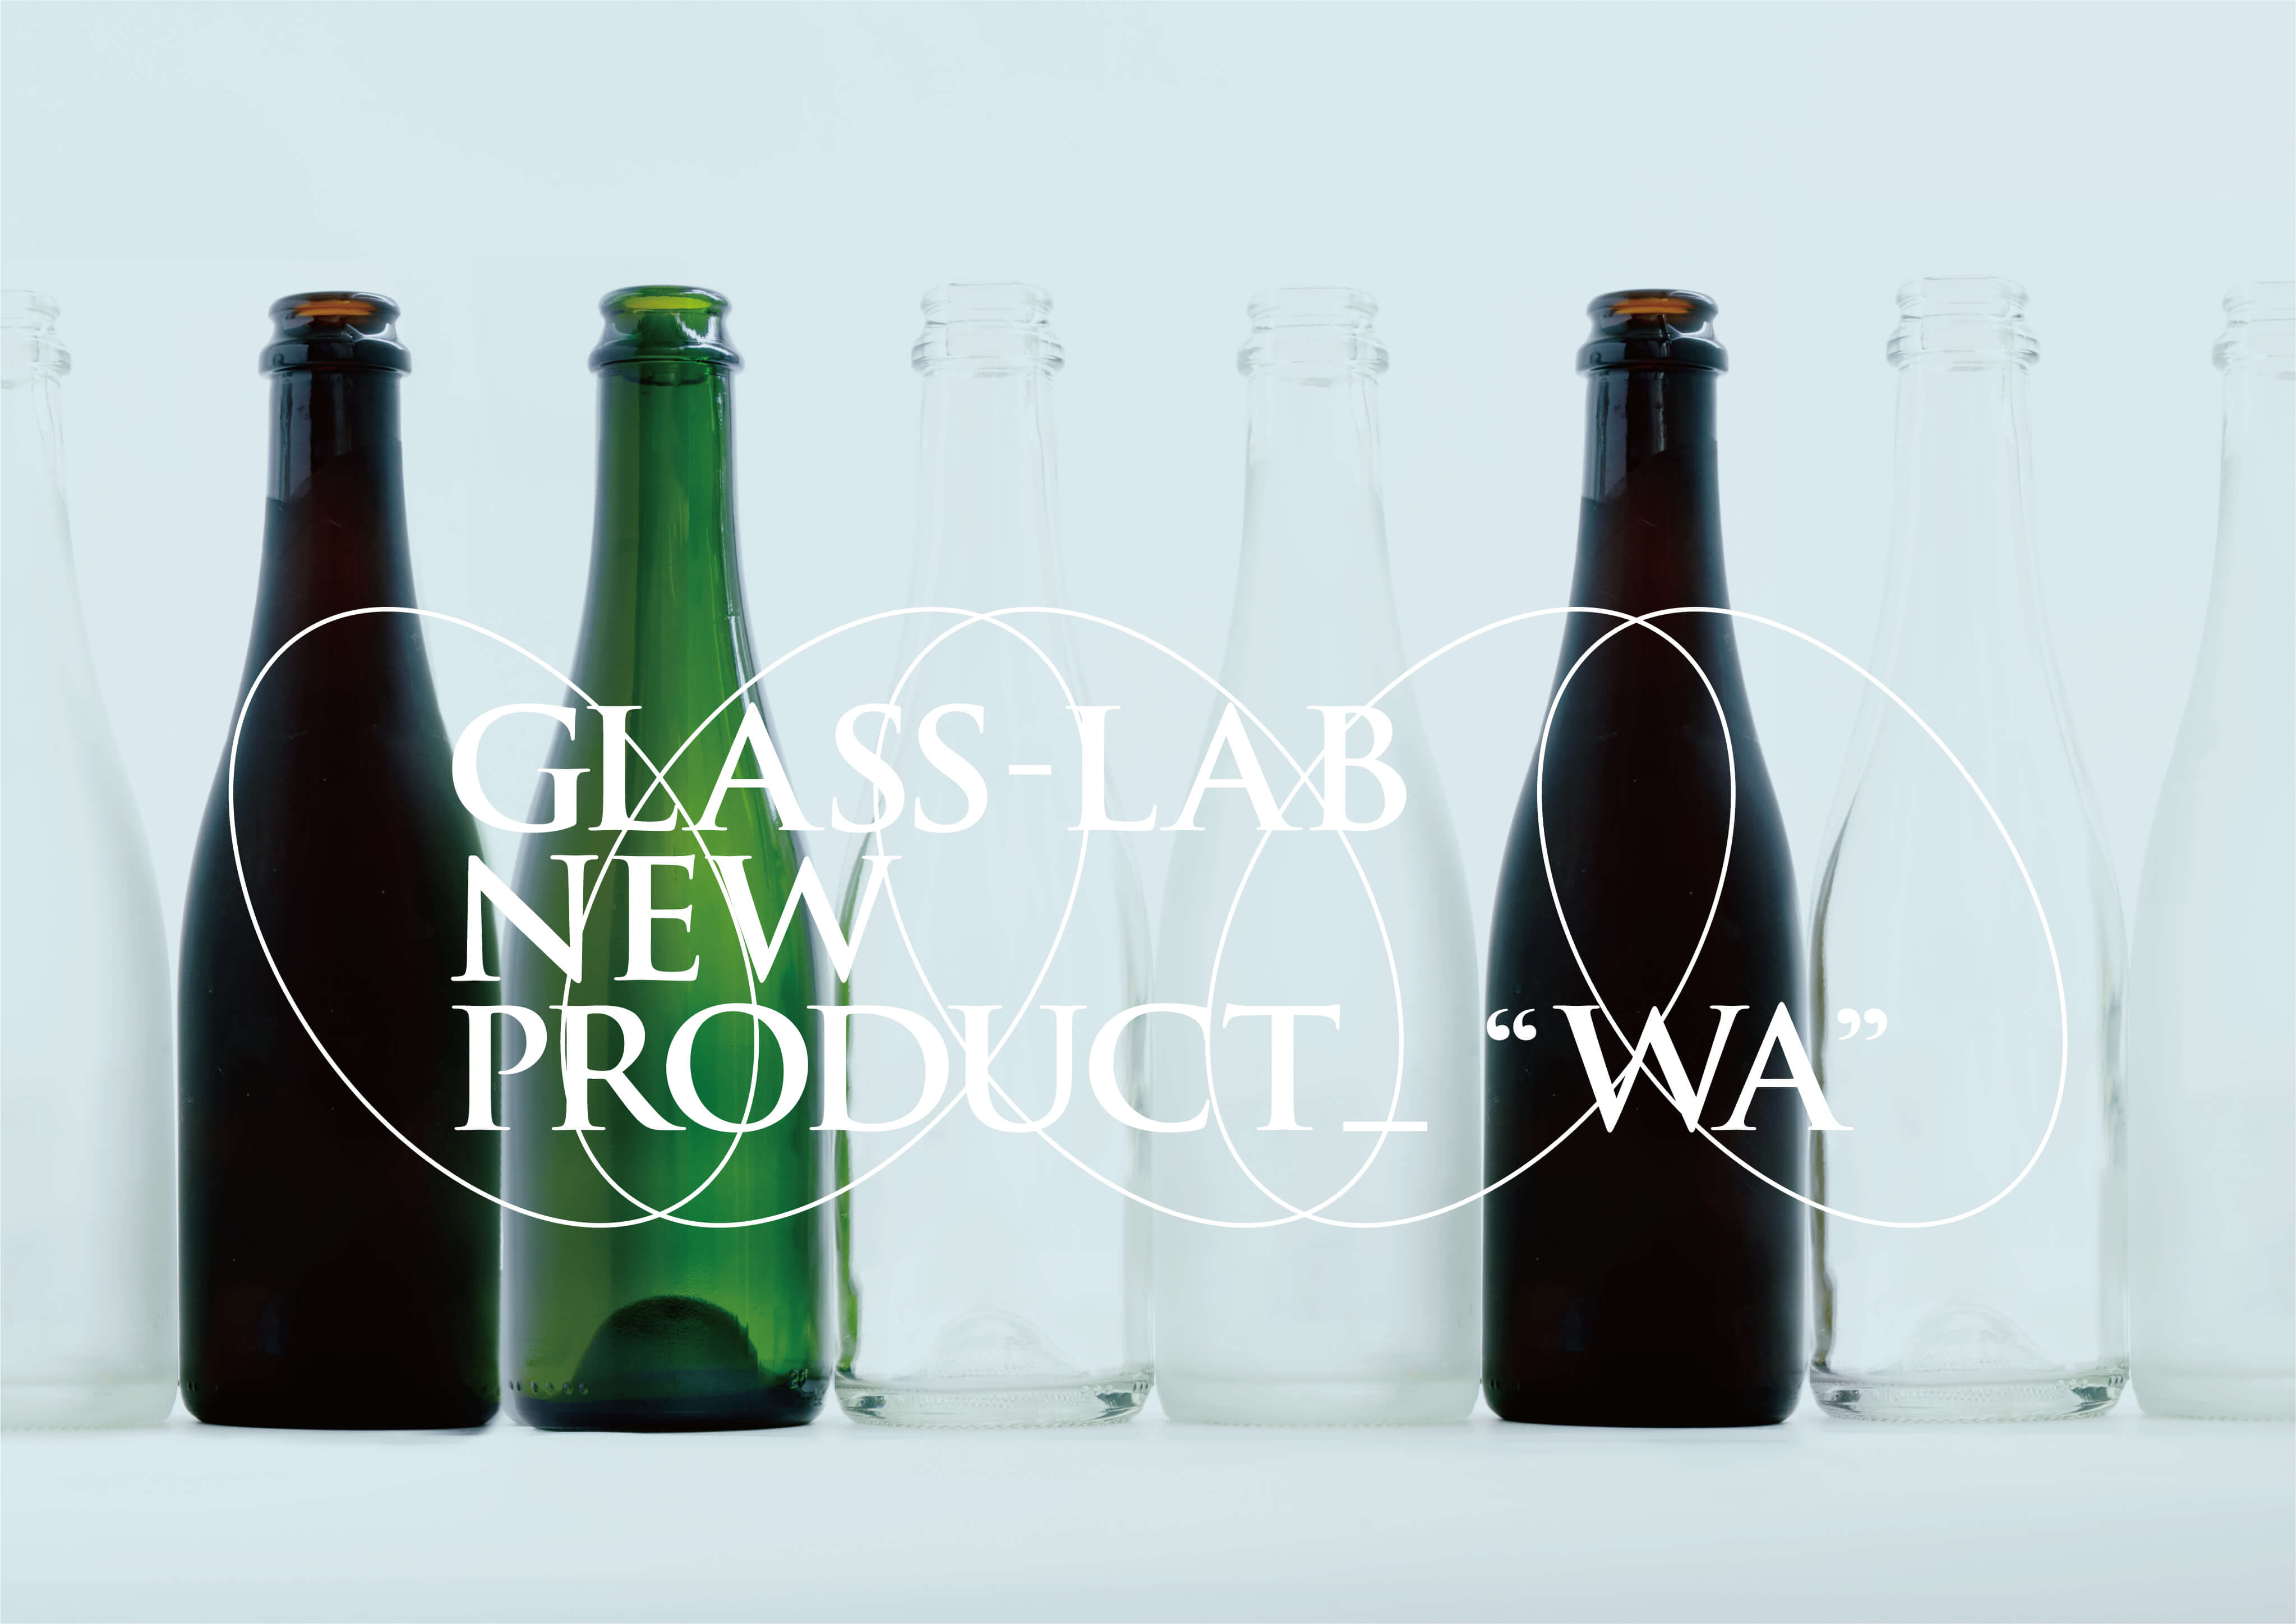 glass-lab-new-product-wa1